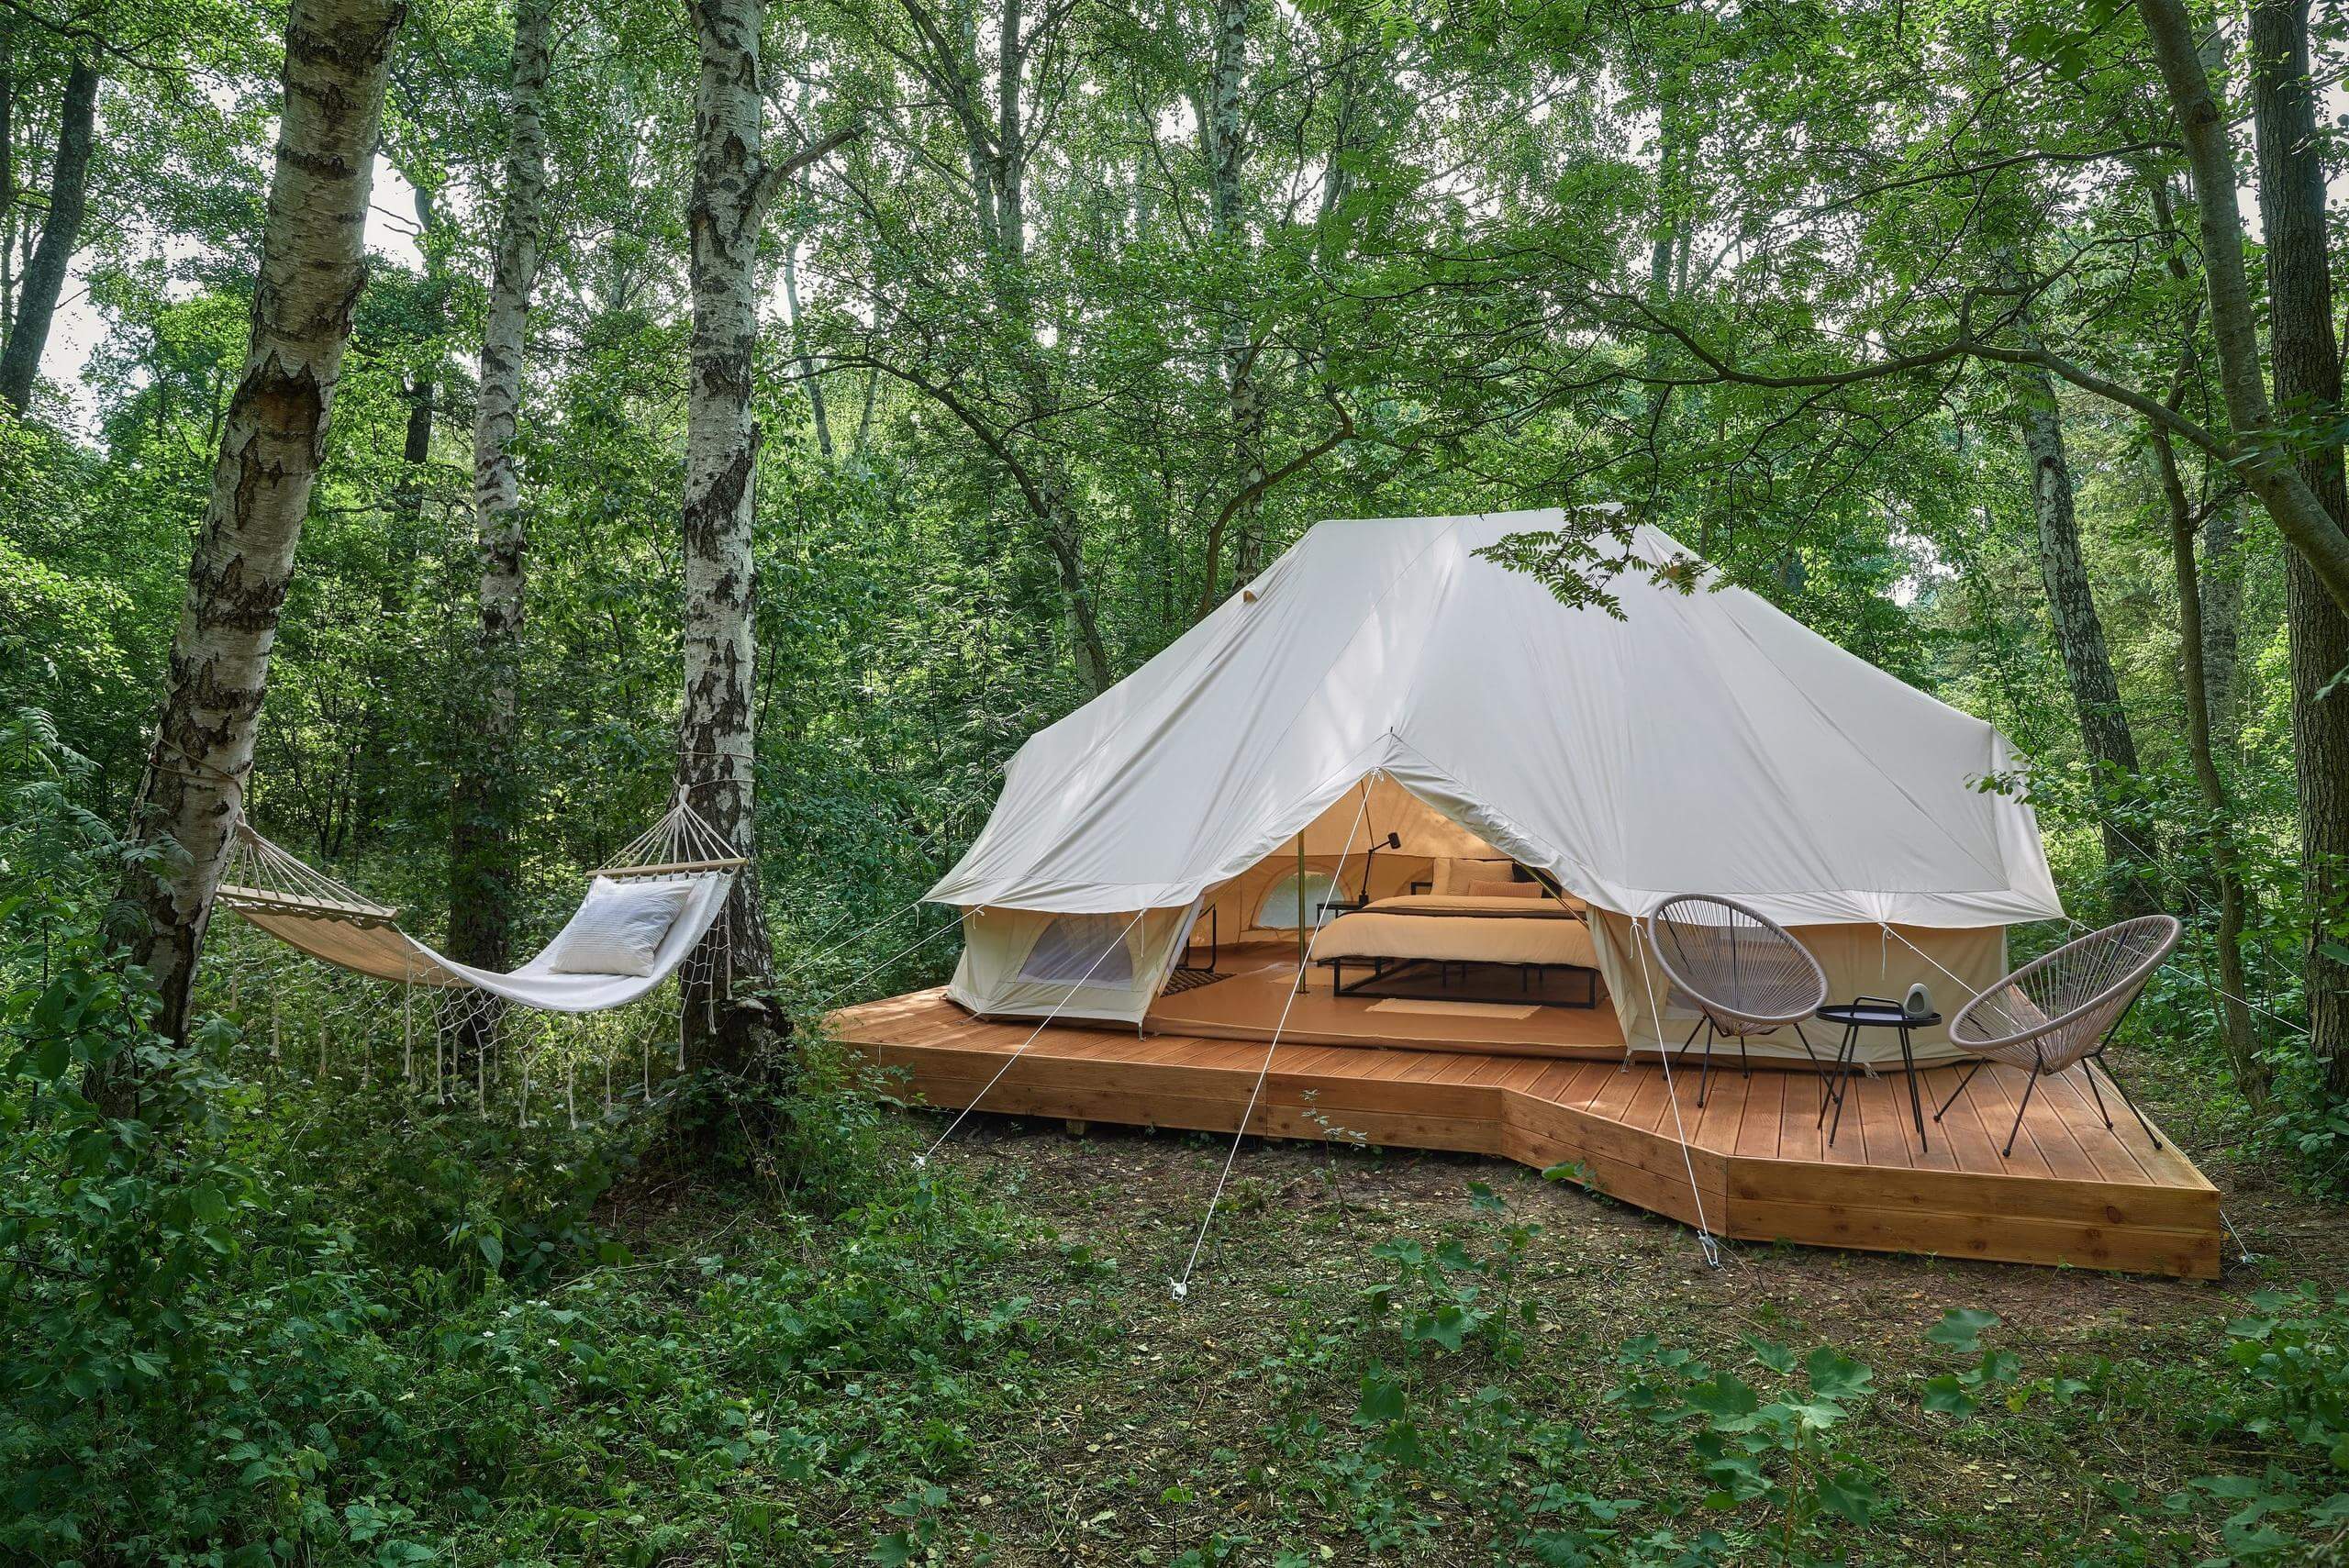 Шатер-палатка установлен на деревянном подиуме, рядом гамак для отдыха.